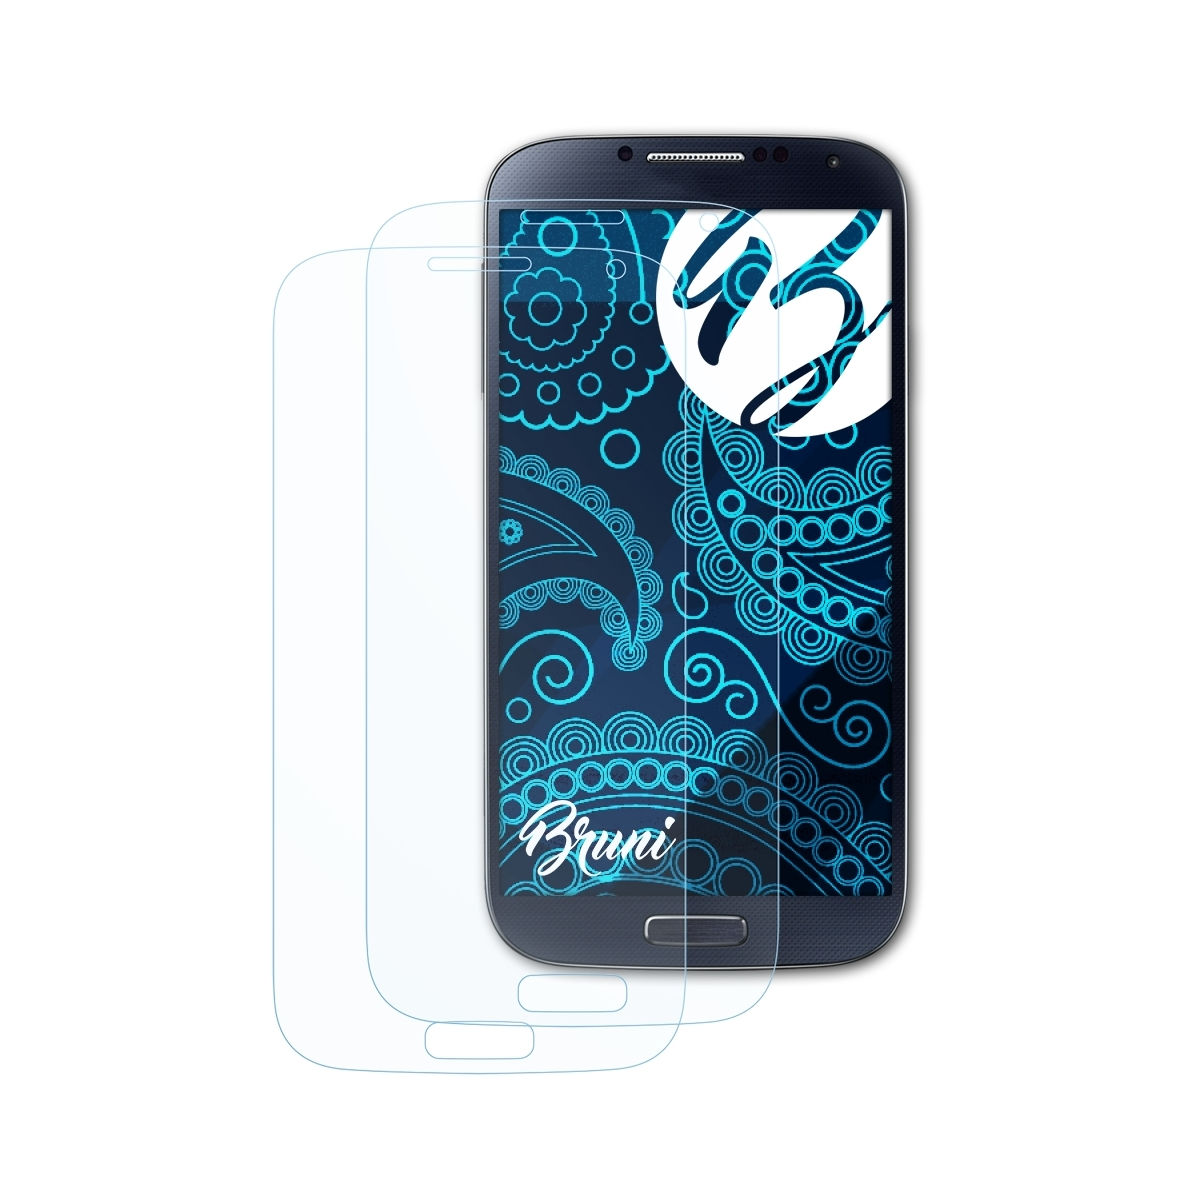 Basics-Clear BRUNI S4) Schutzfolie(für Galaxy Samsung 2x